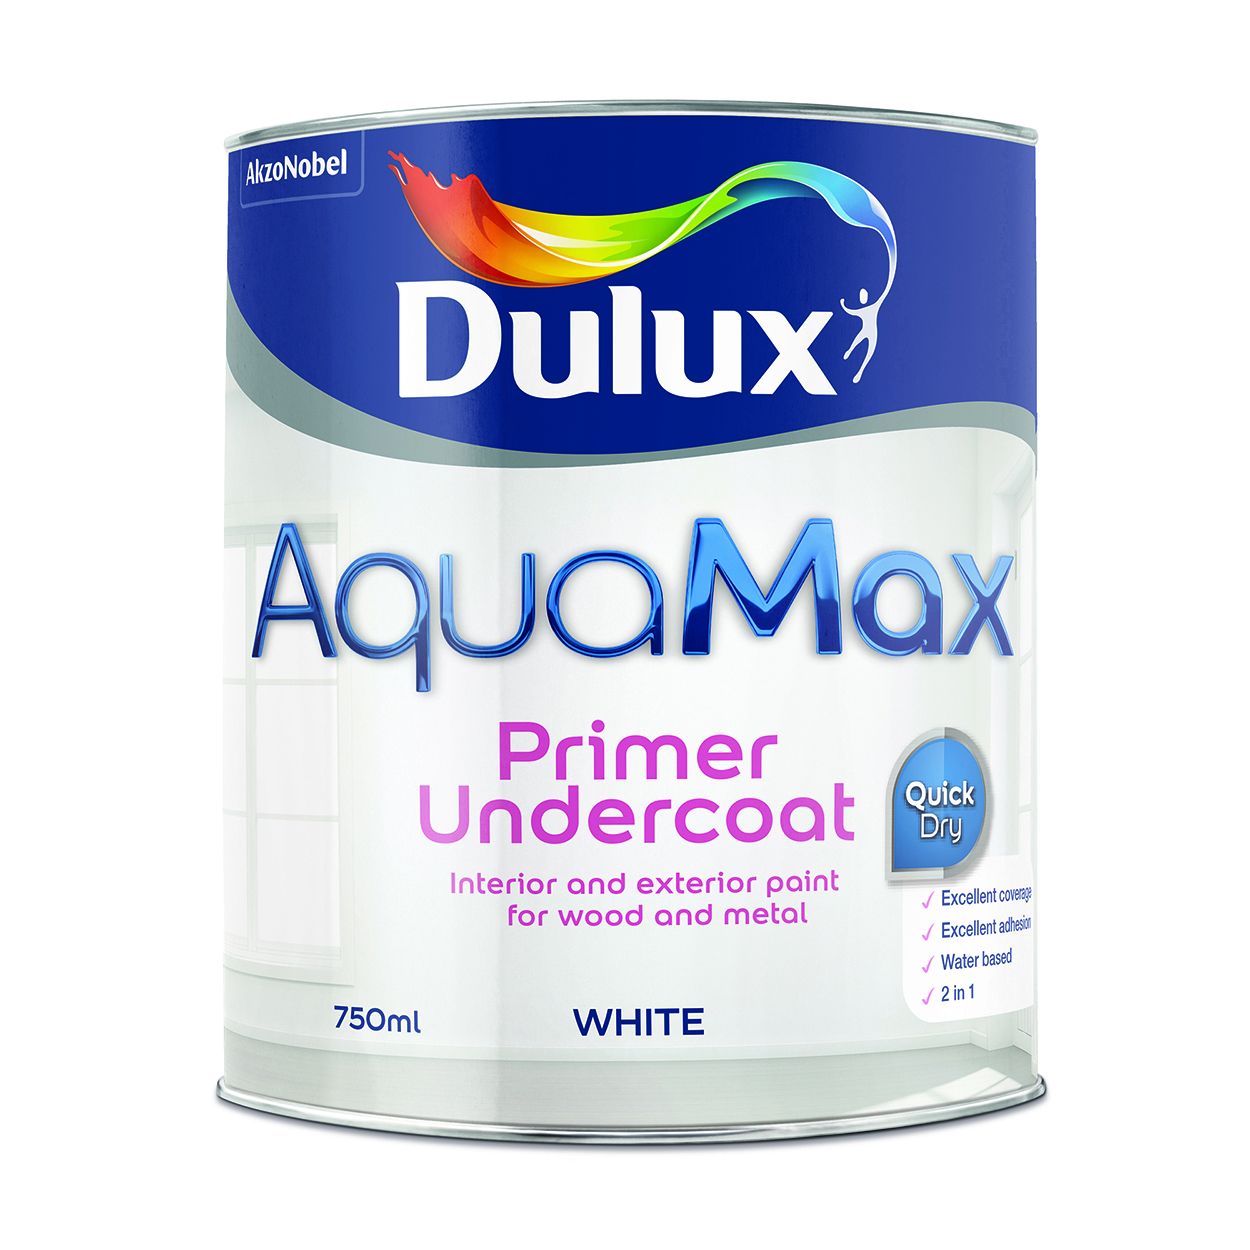 Dulux AquaMax Primer Undercoat White